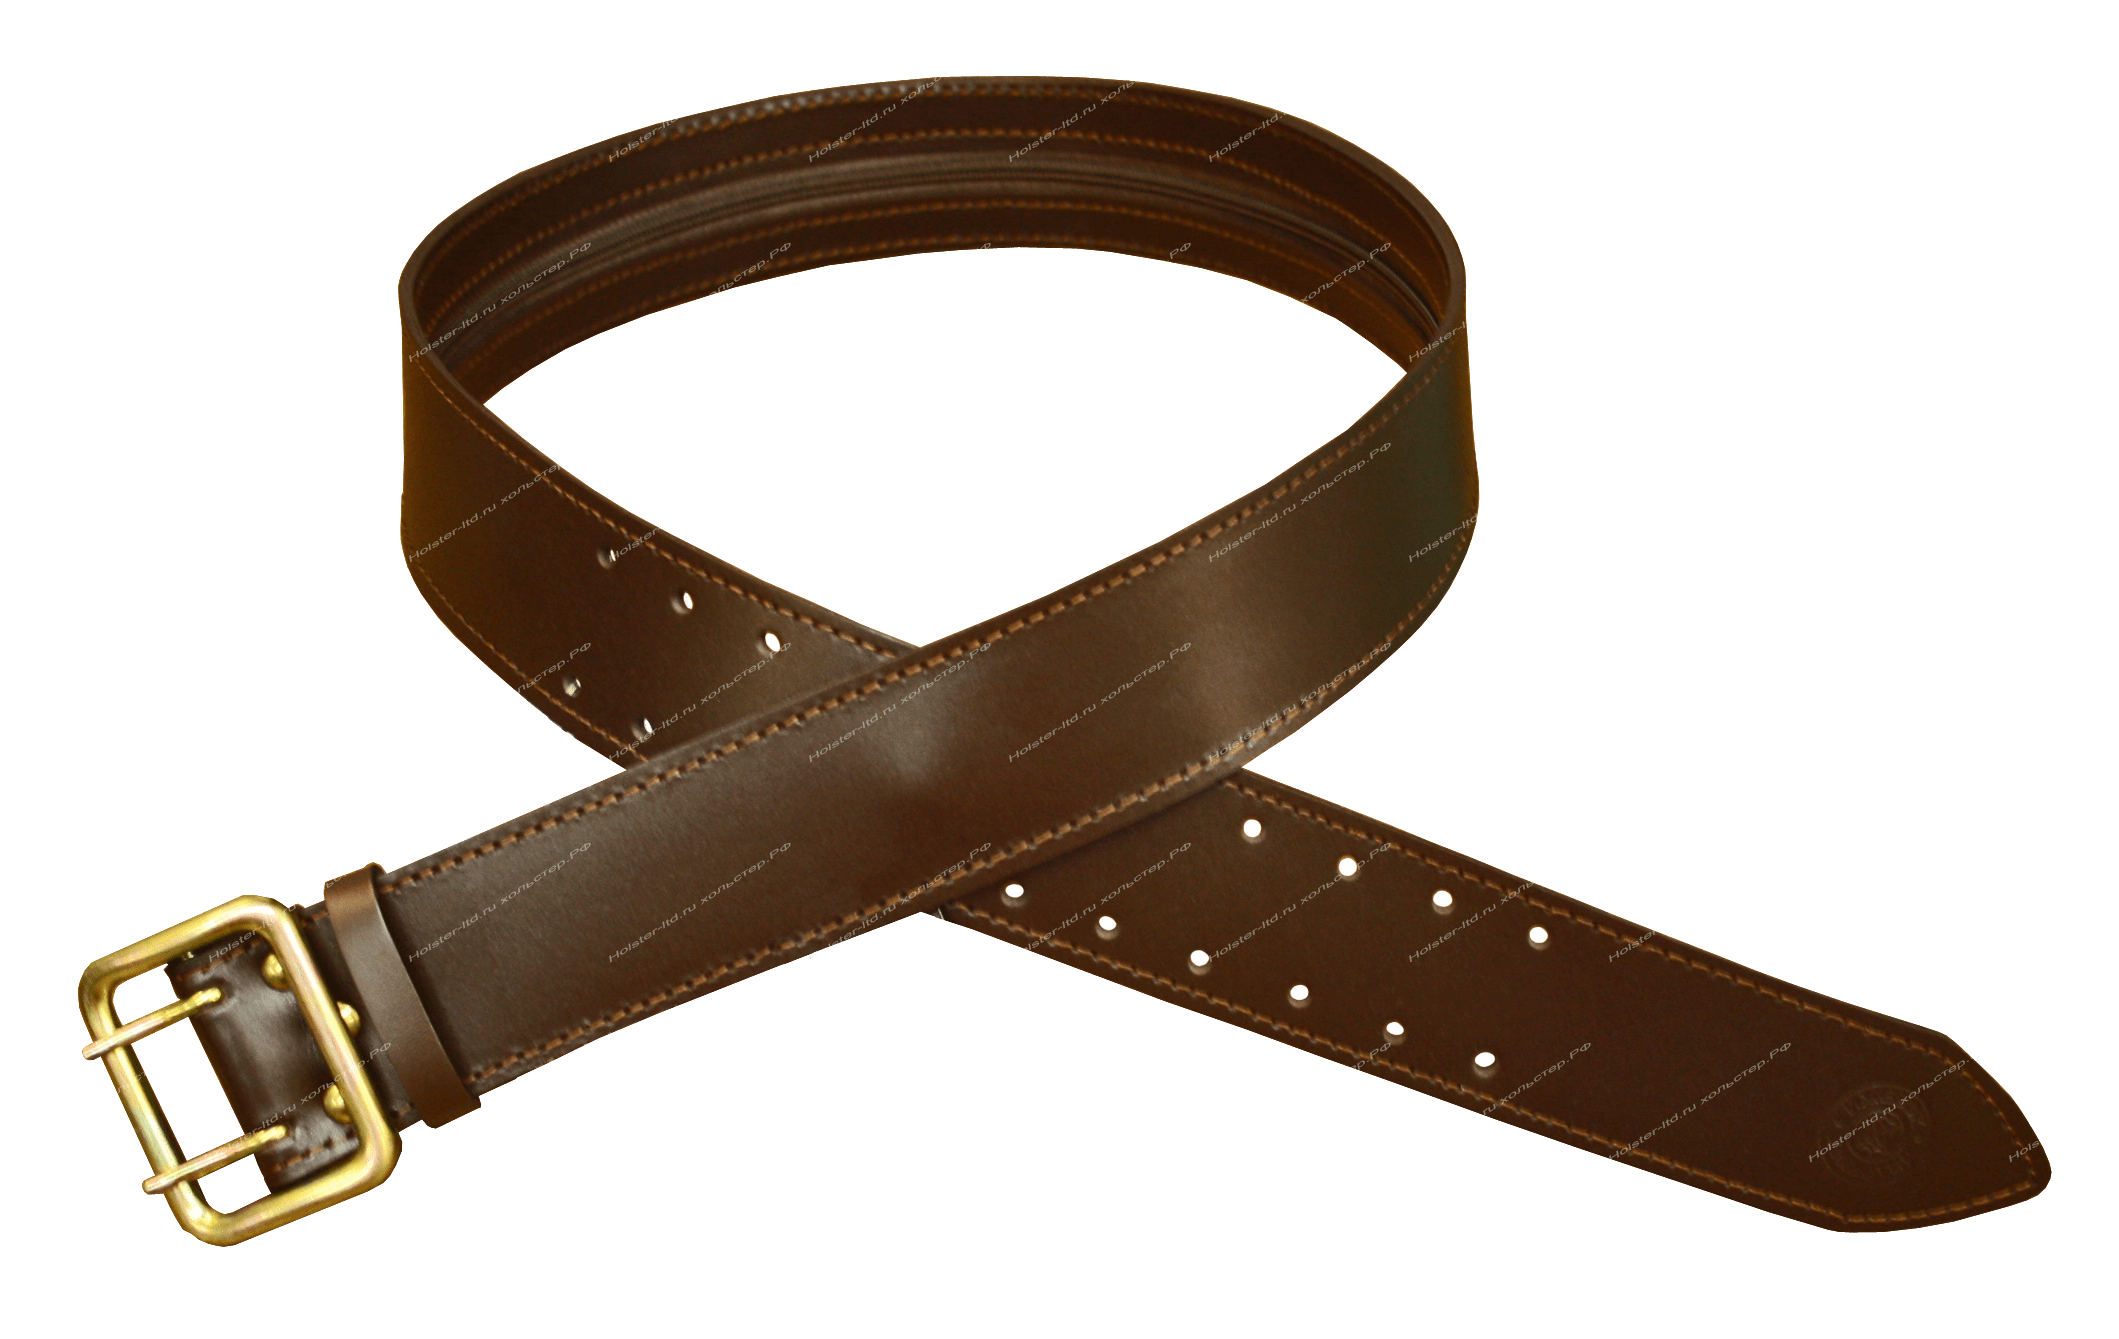 Проси ремень. Ремень Хольстер молния. Ремень Leather Belt JK 2000. Axe59549 ремень. Ремень Хольстер кожаный.